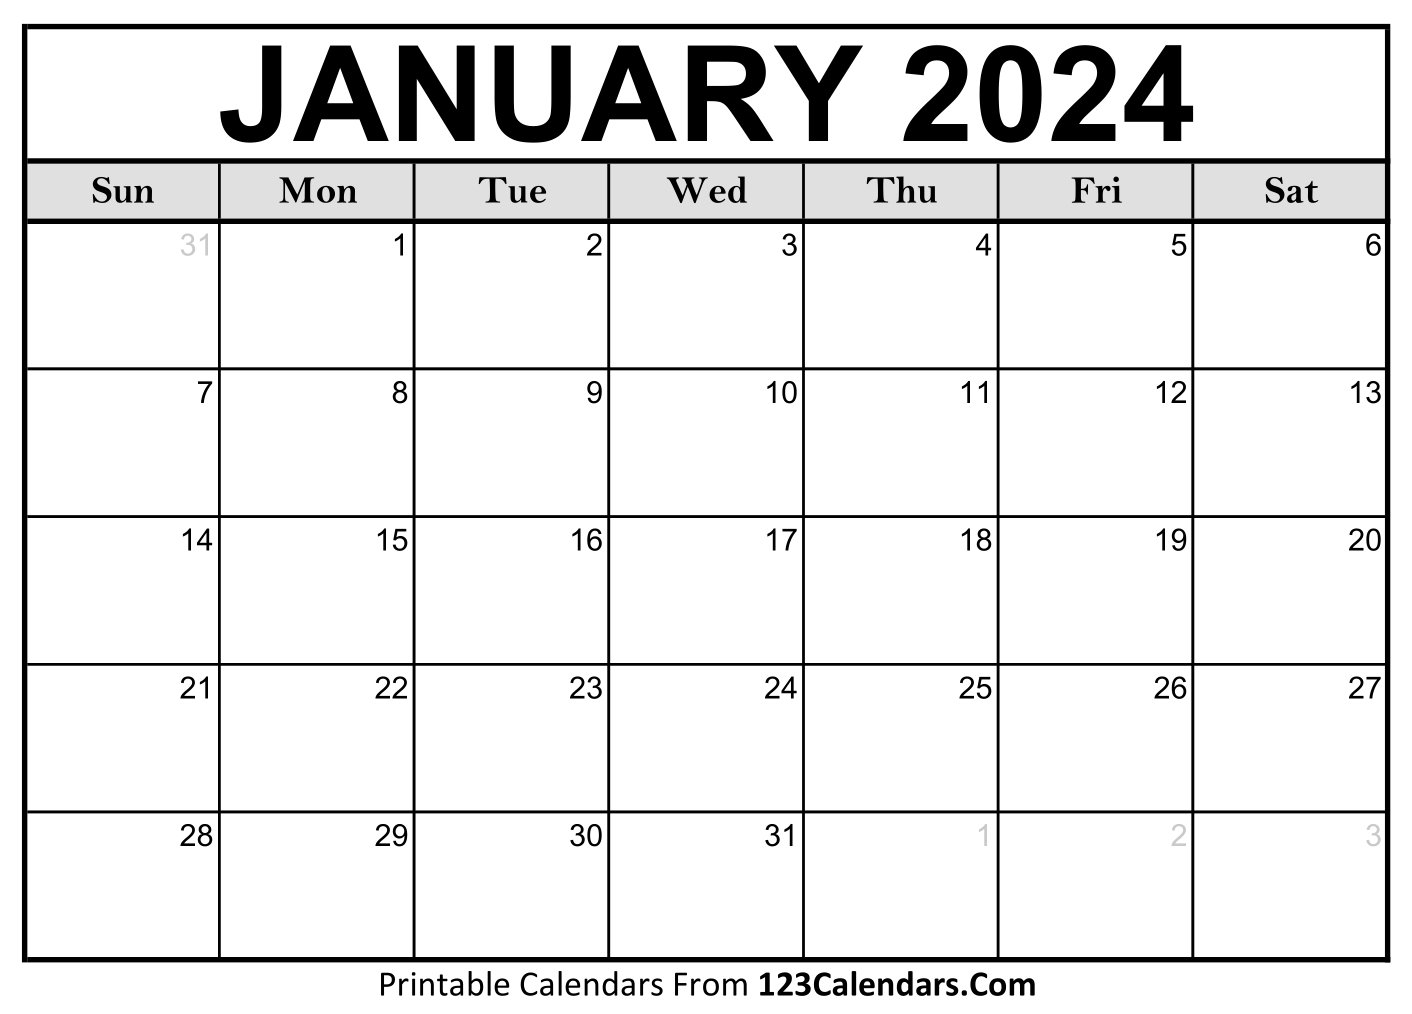 Printable January 2024 Calendar Templates - 123Calendars.com